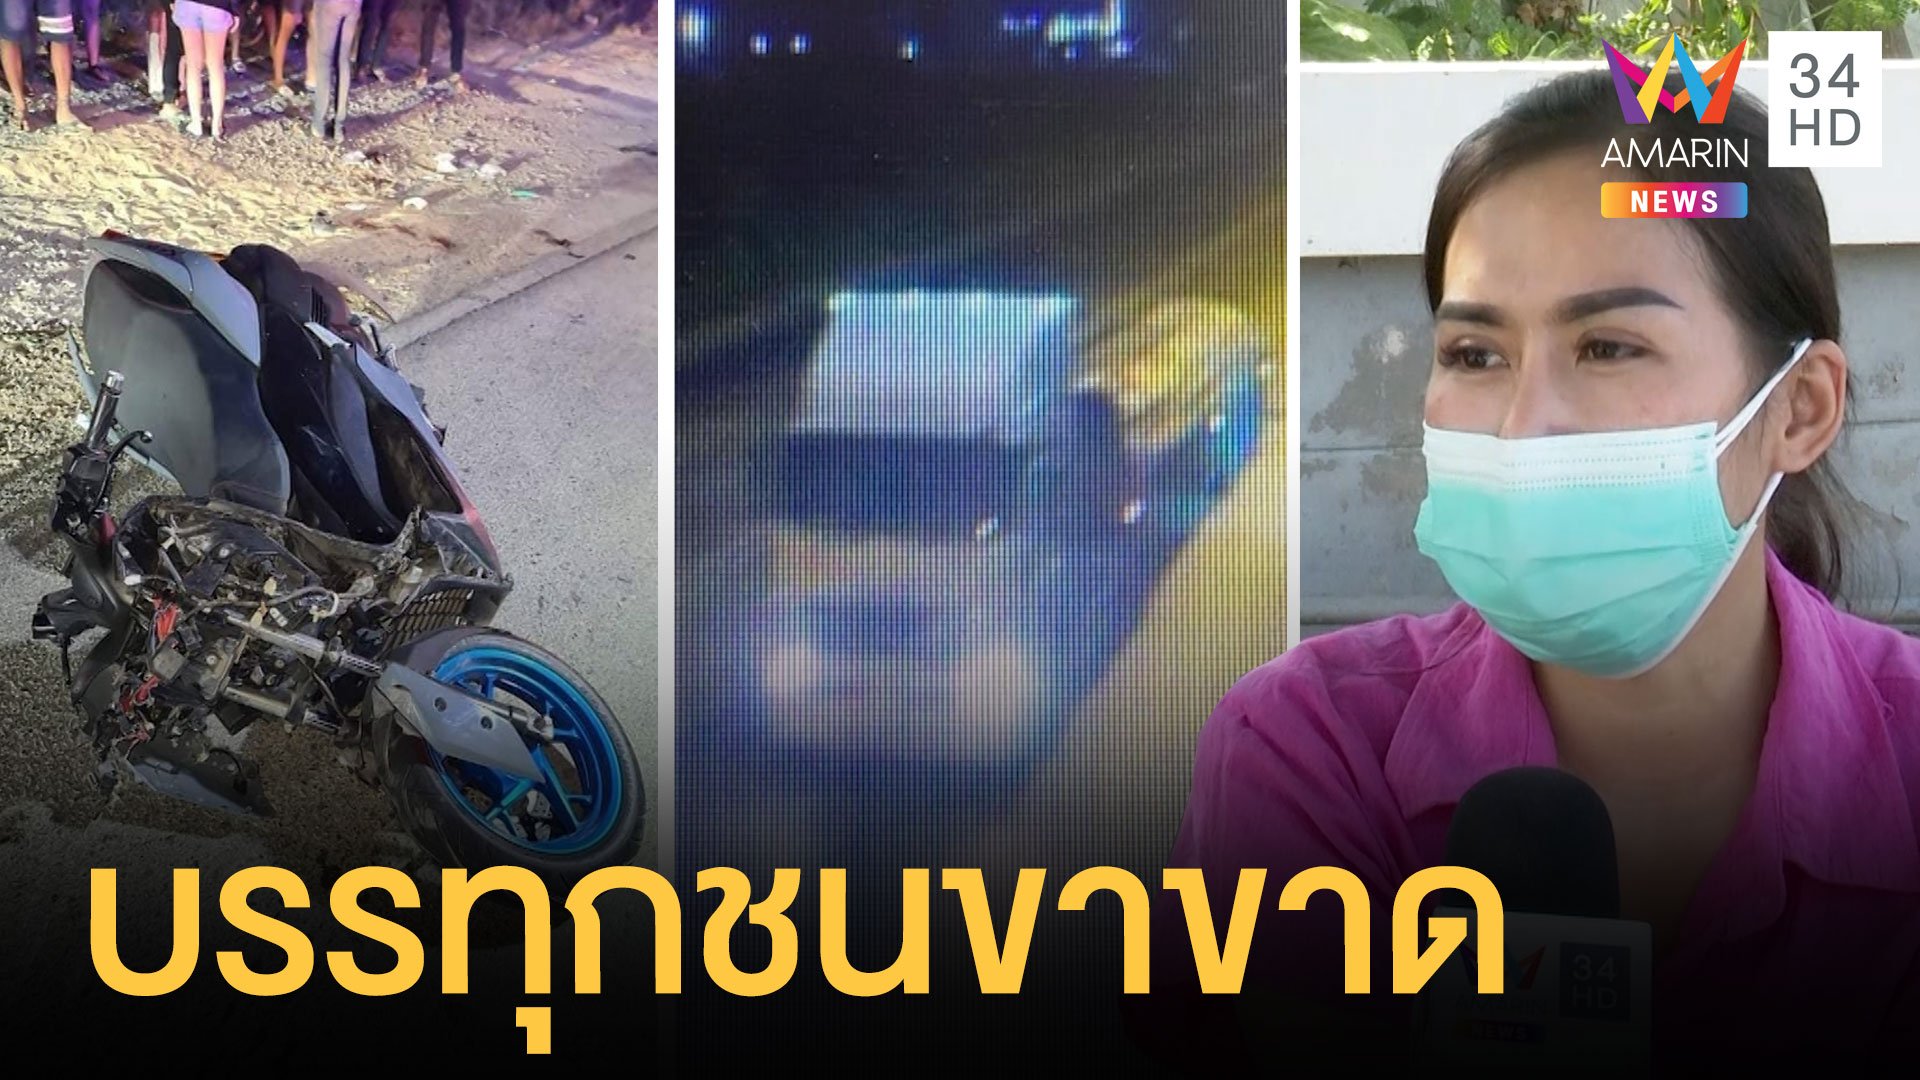 หนุ่มถูกรถบรรทุกชนขาขาด ก่อนหลบหนี | ข่าวเที่ยงอมรินทร์ | 19 ม.ค. 65 | AMARIN TVHD34